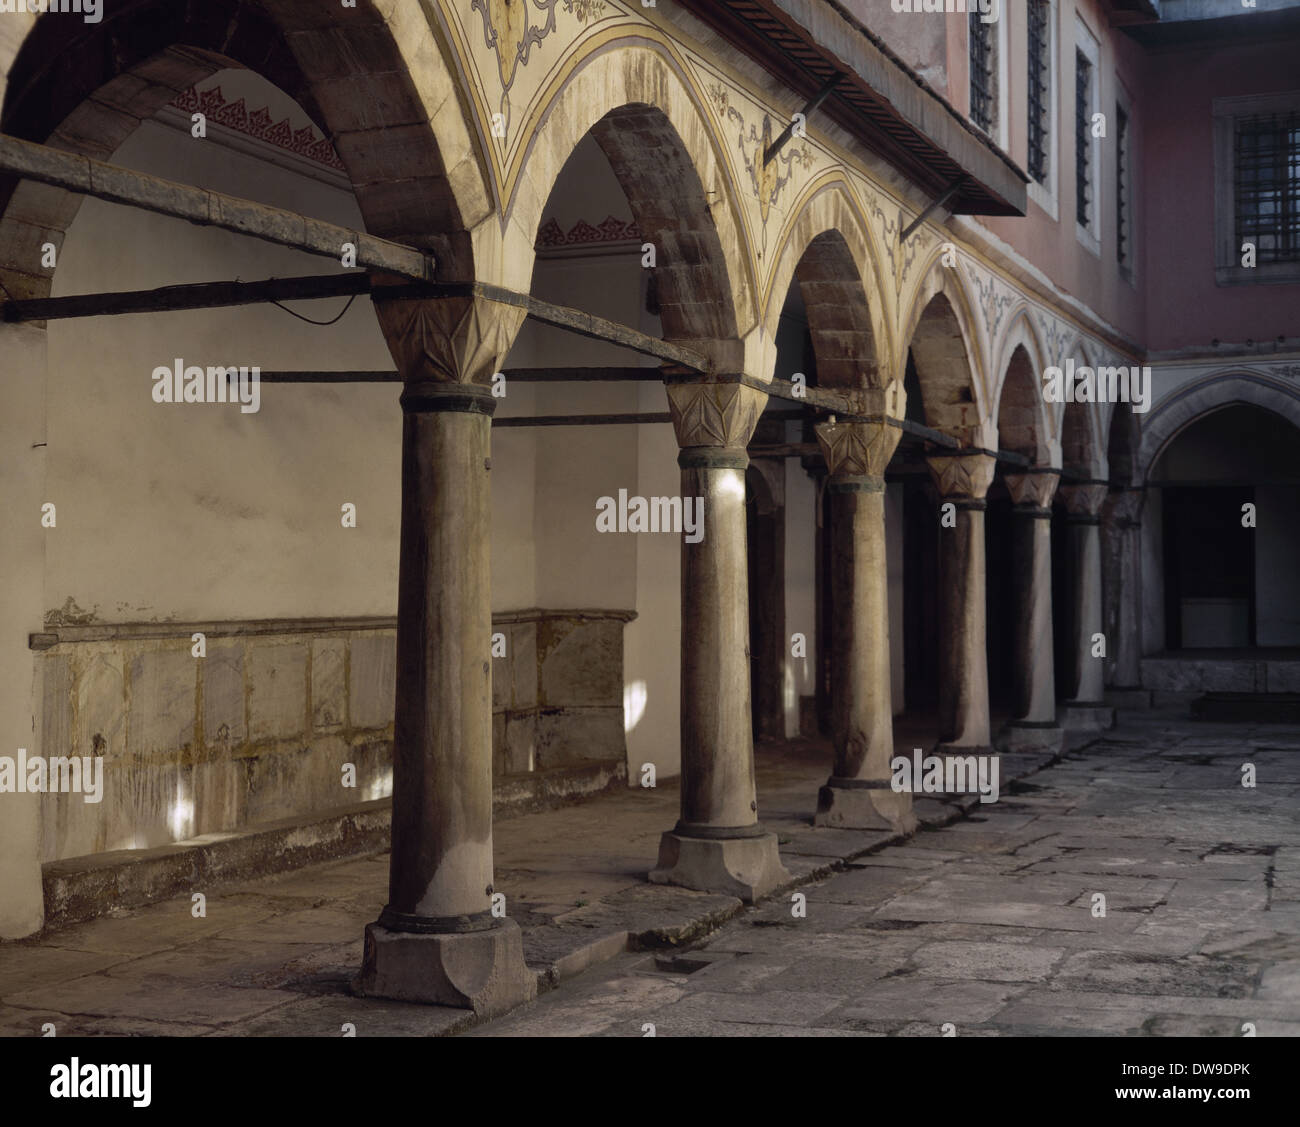 La Turchia. Istanbul. Il Topkapi Palace. Xv secolo. Cortile del Harem. Dettaglio. Foto Stock